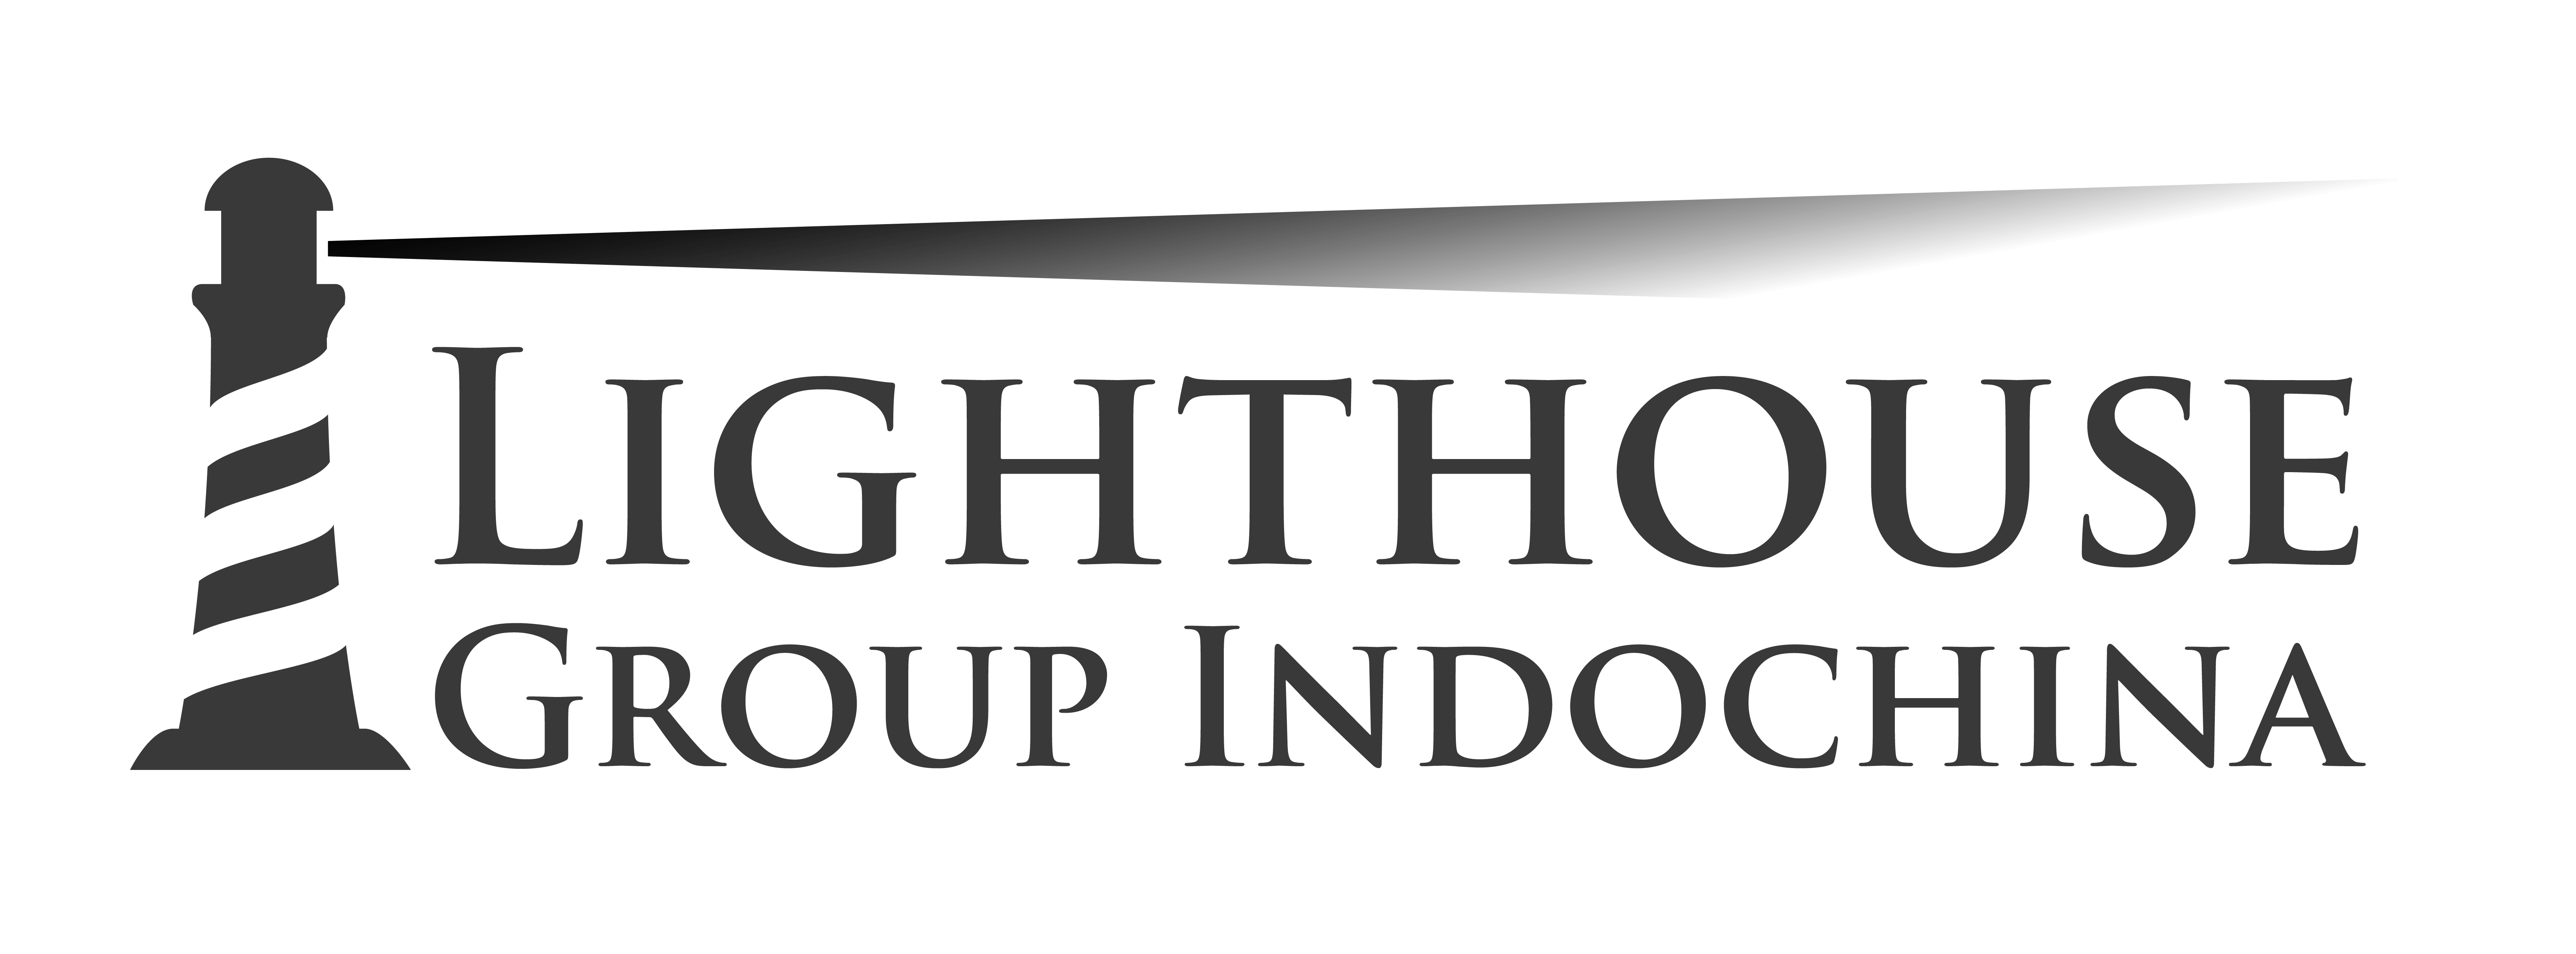 Lighthouse Group Indochina